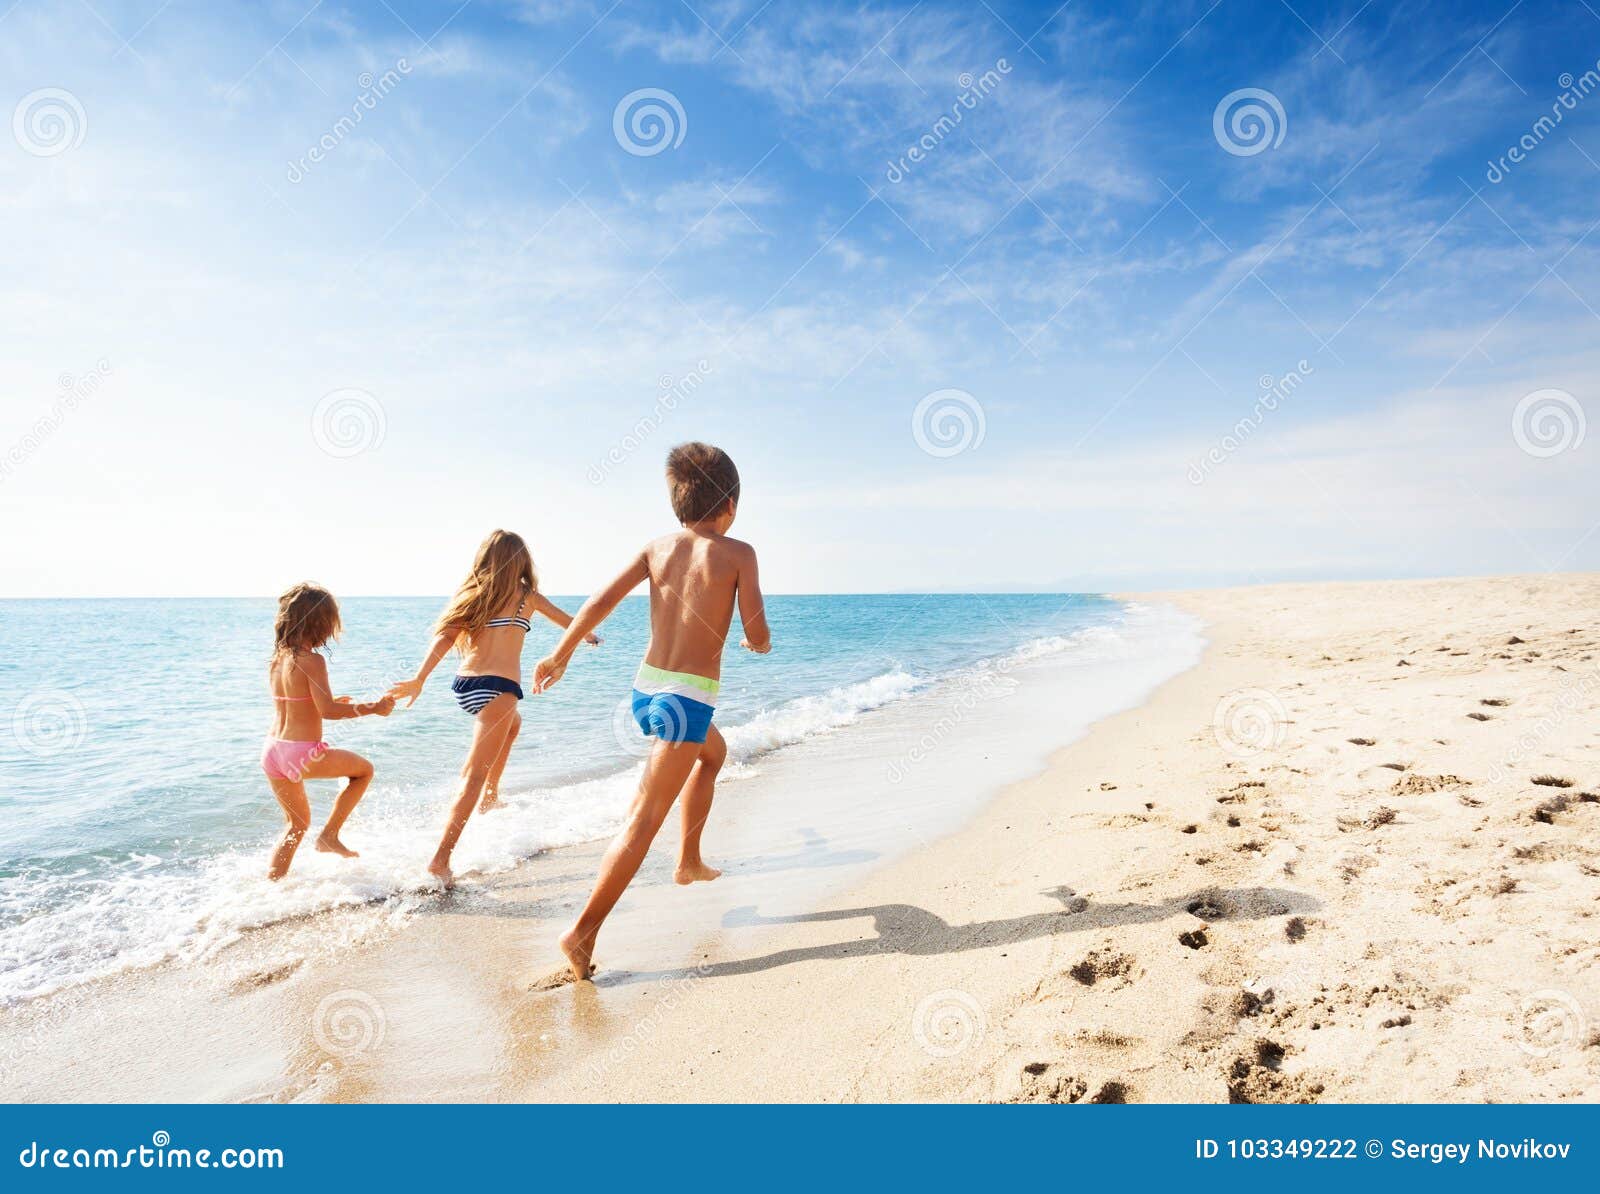 kids running along beach during summer vacation